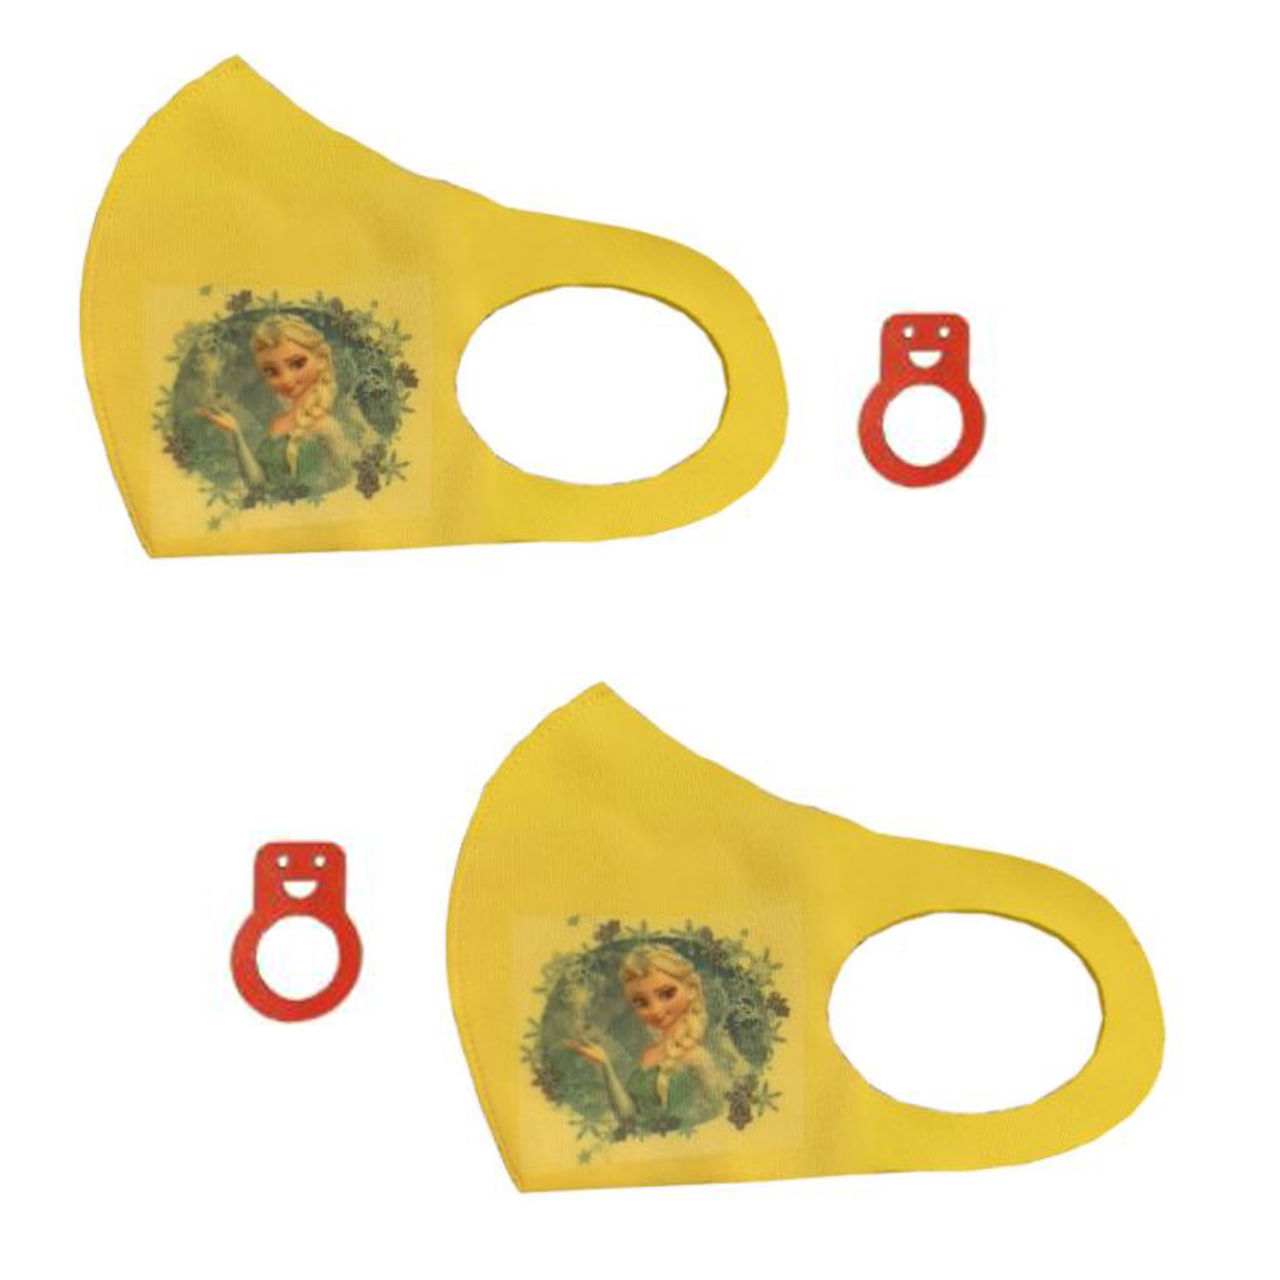 ماسک پارچه ای بچگانه مدل طرح فروزن بسته دو عددی به همراه انگشتر سلامت 